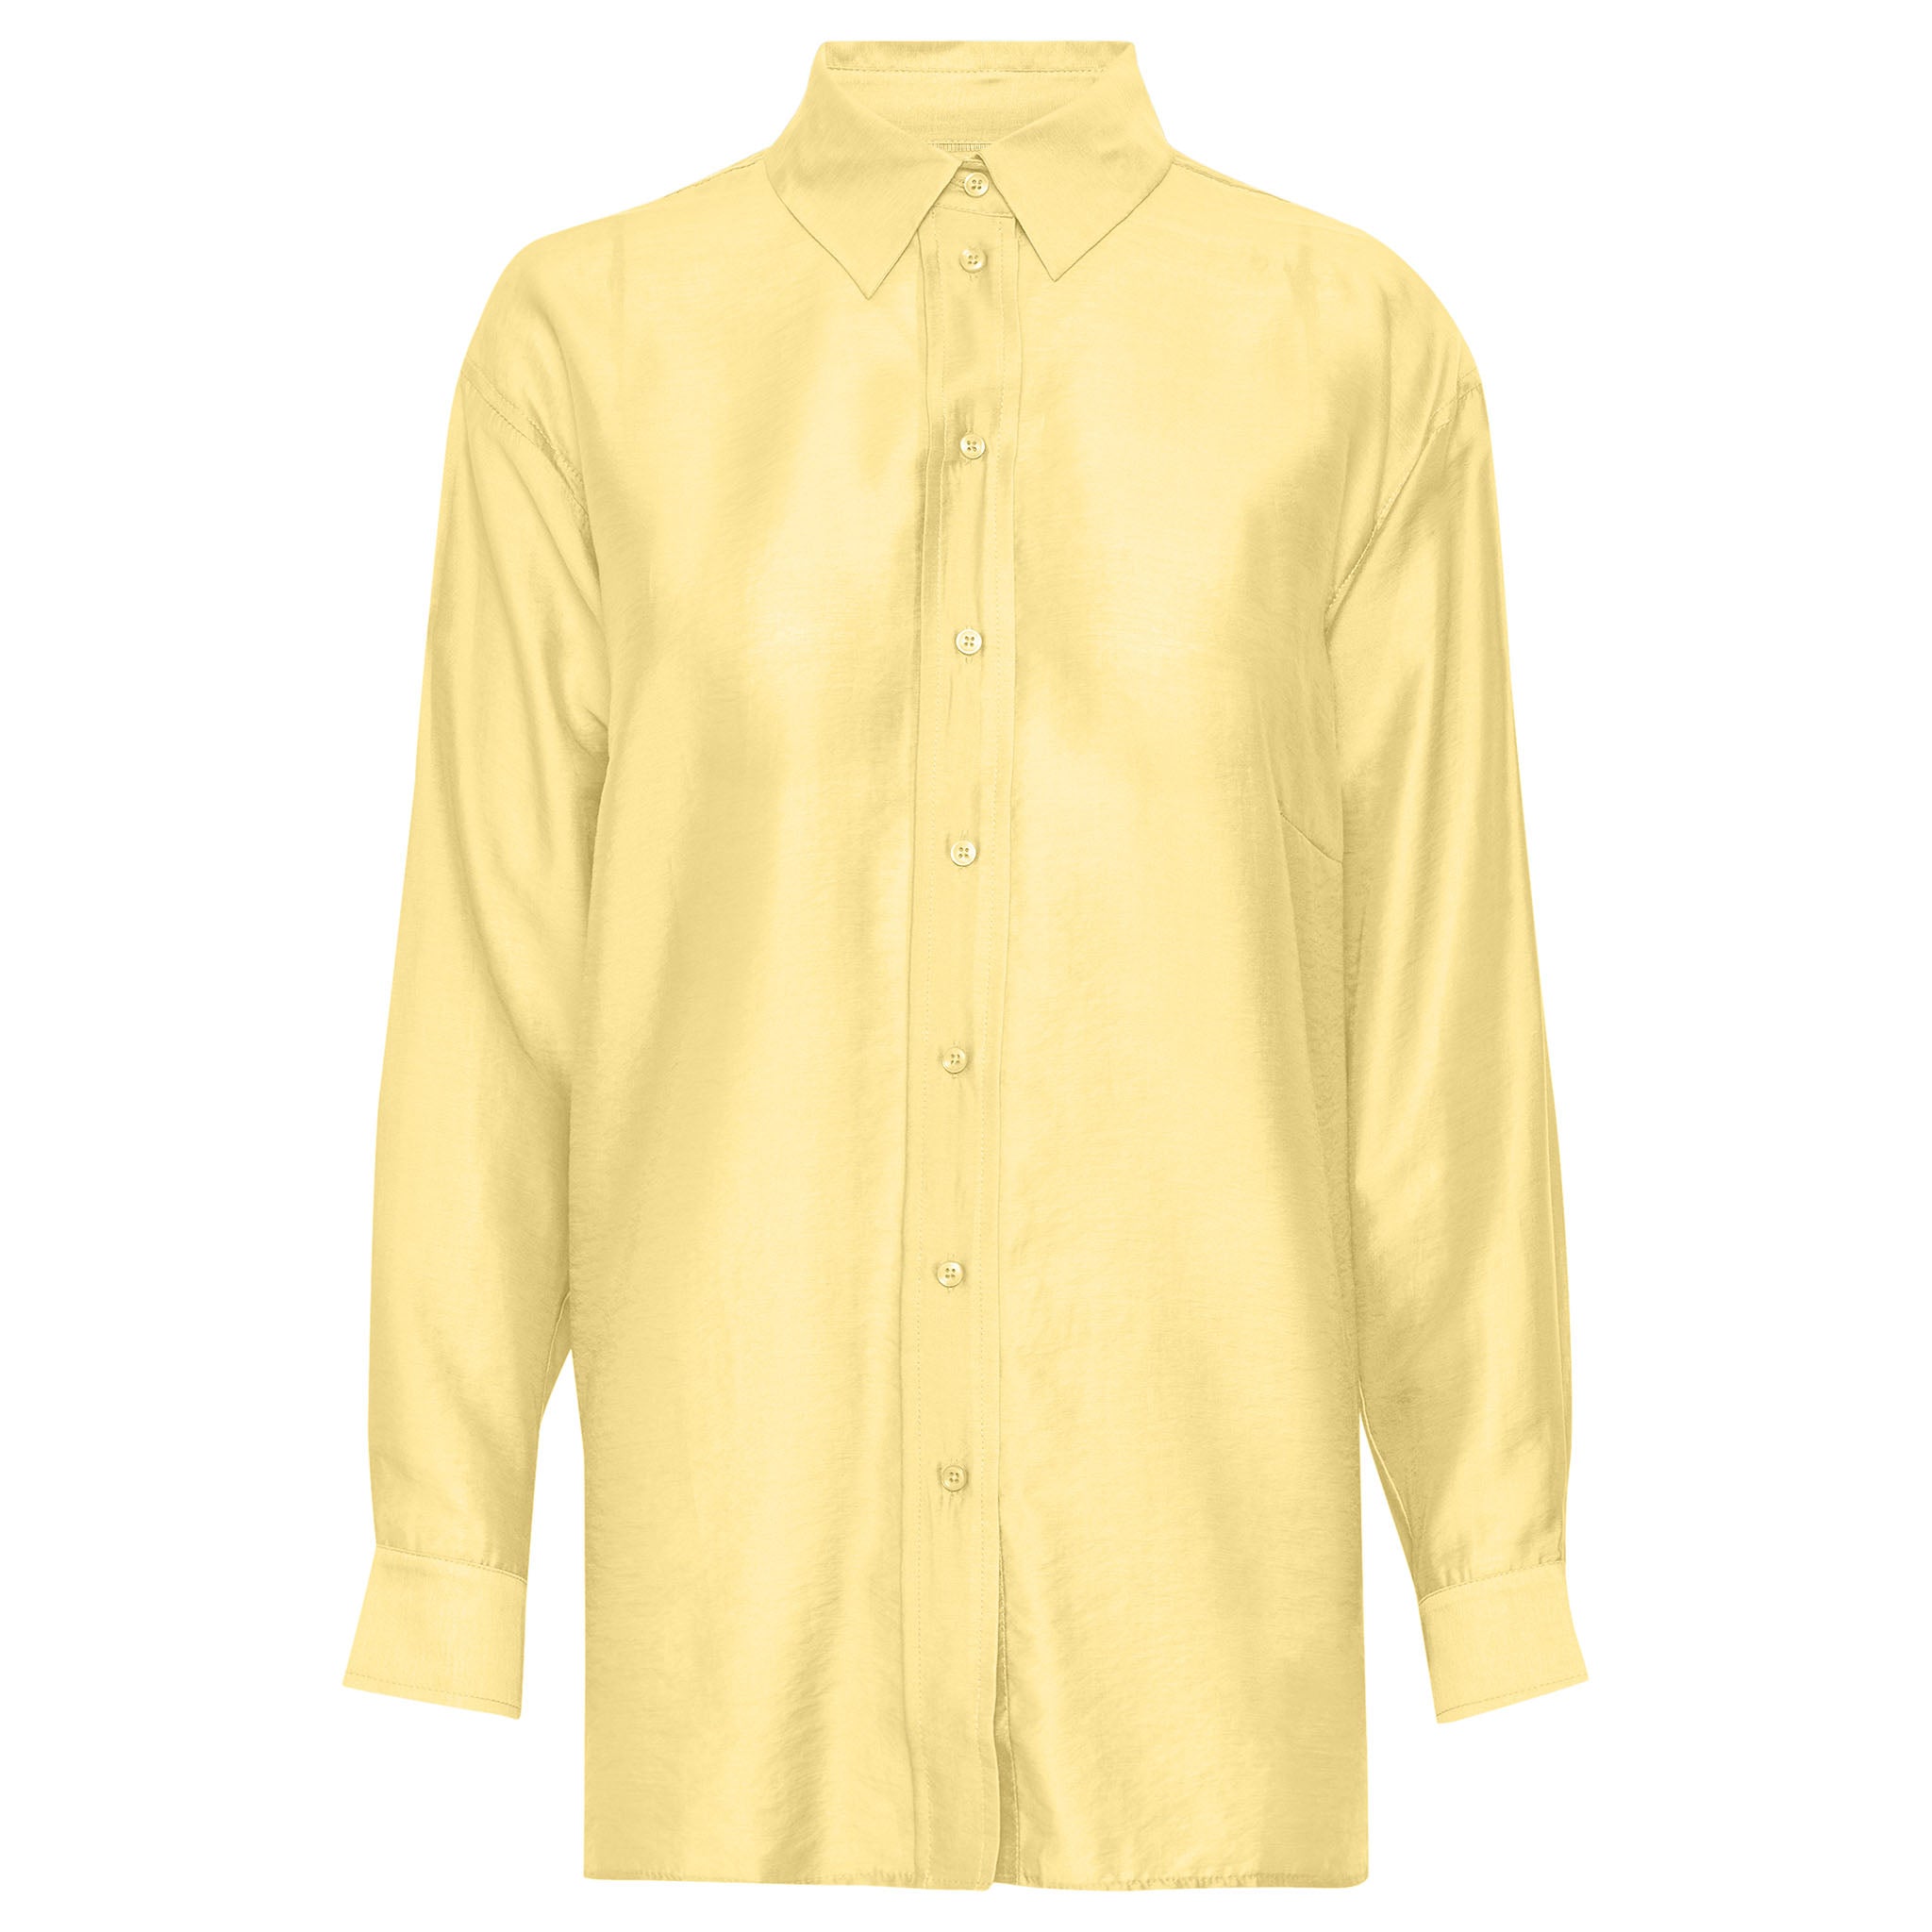 In Wear. Keltainen, hieman kiiltäväpintainen, läpikuultava naisten väljä paitapusero. Etukuva.